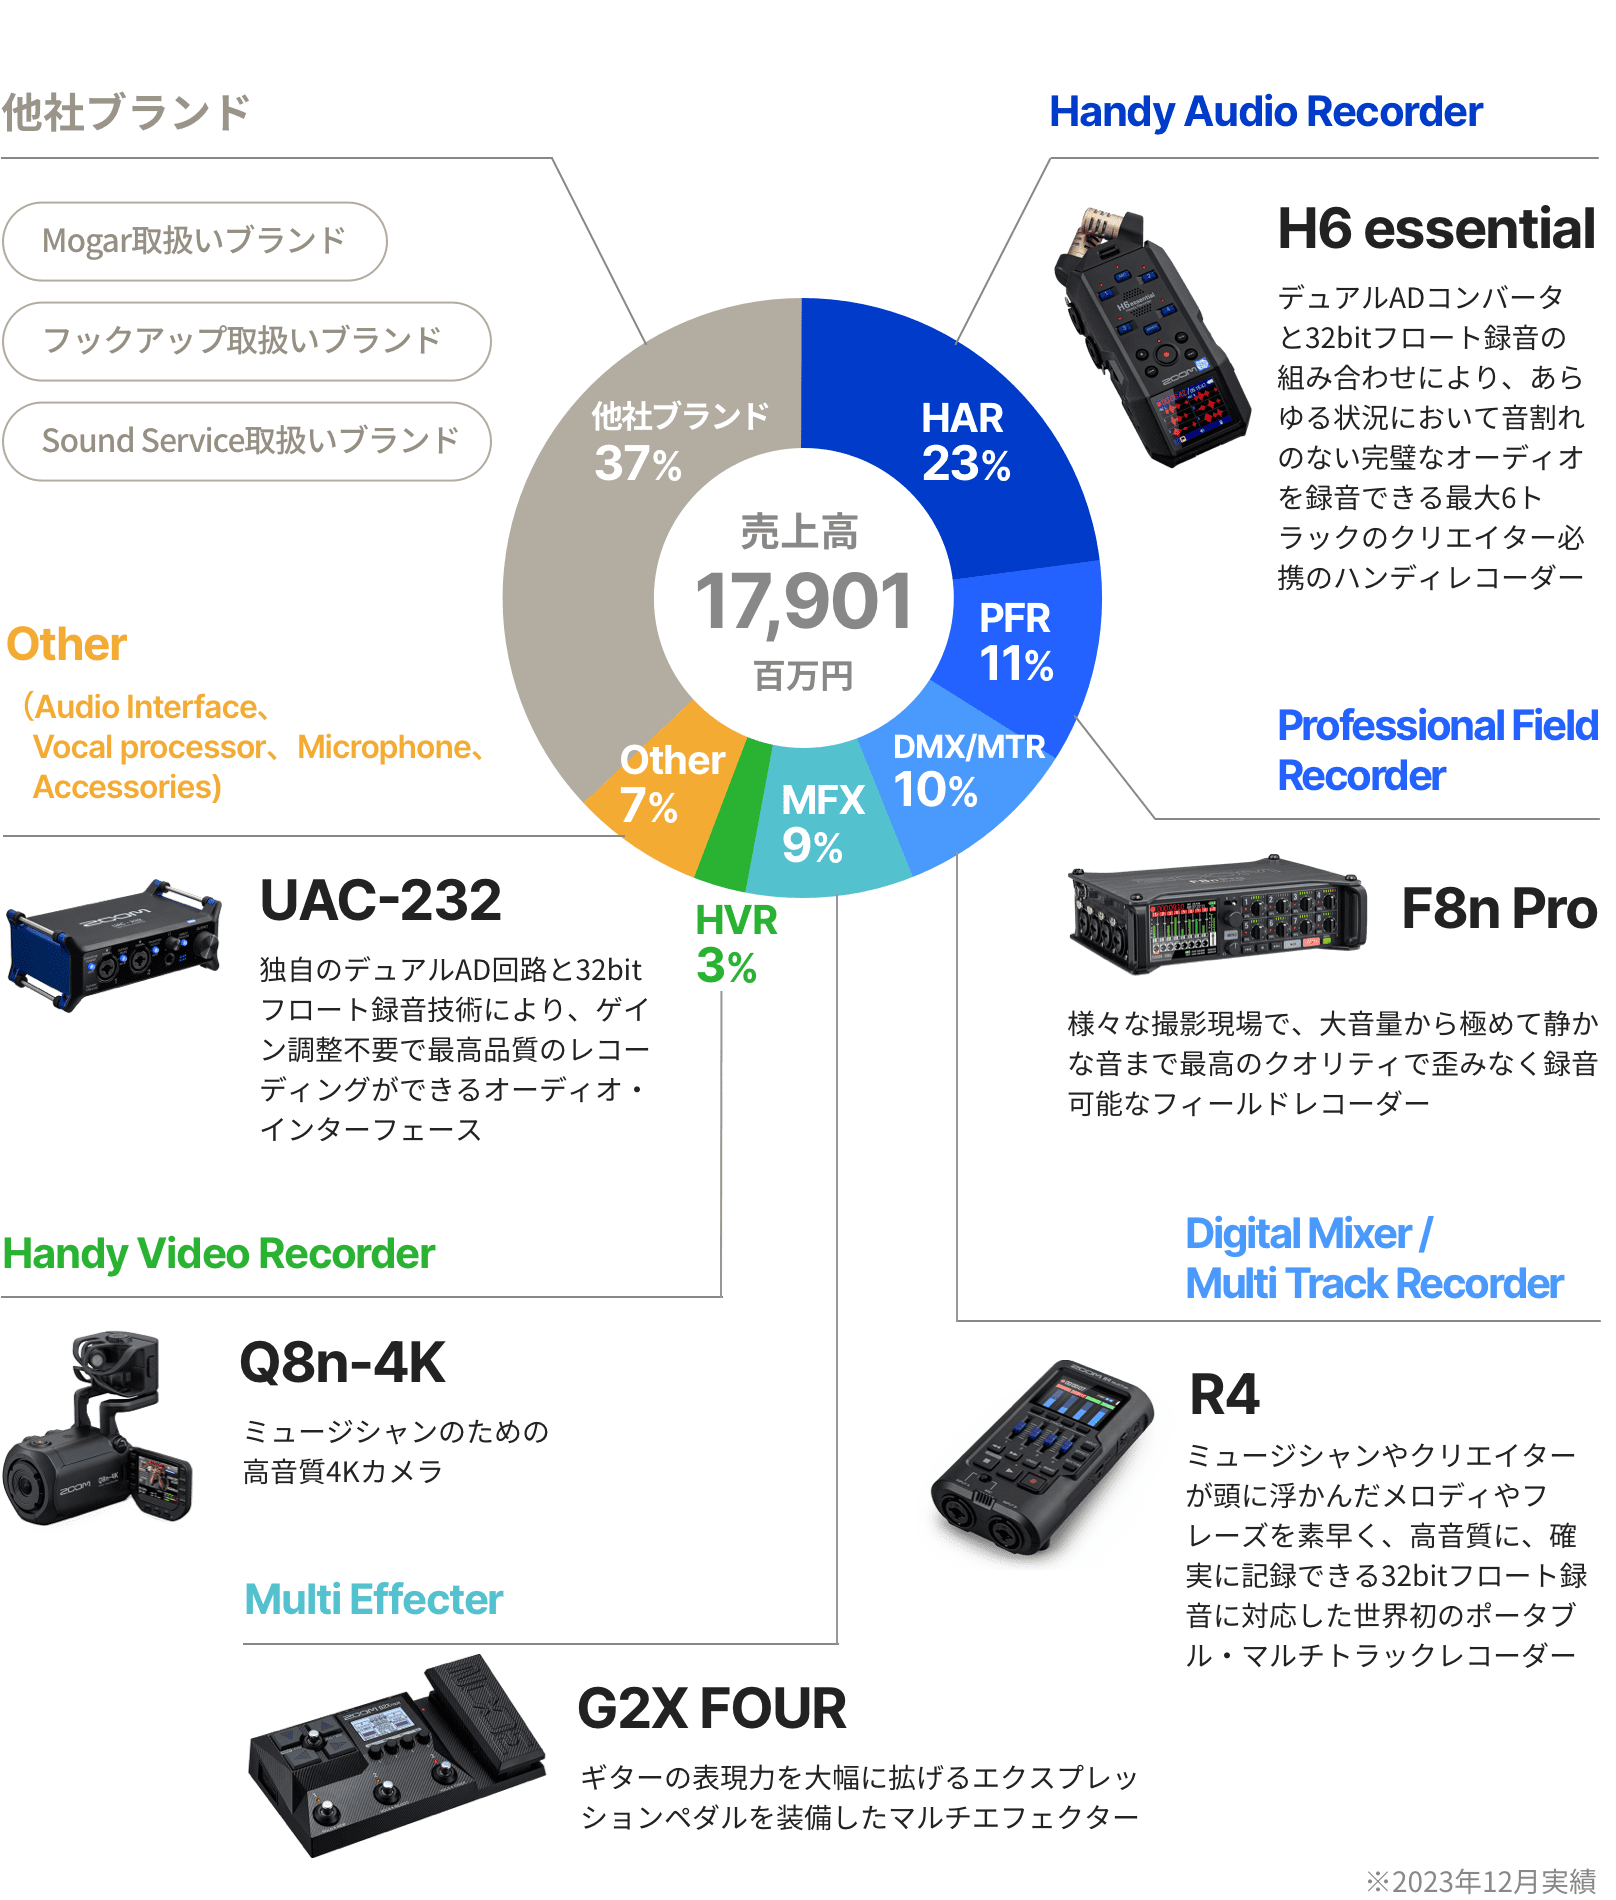 製品カテゴリー別売上高構成比 円グラフ。ハンディオーディオレコーダー（HAR）31%、デジタルミキサー/マルチトラックレコーダー（DMX/MTR）13%、マルチエフェクター（MFX）11%、プロフェッショナルフィールドレコーダー（PFR）10%、ハンディビデオレコーダー（HVR）5%、その他30%